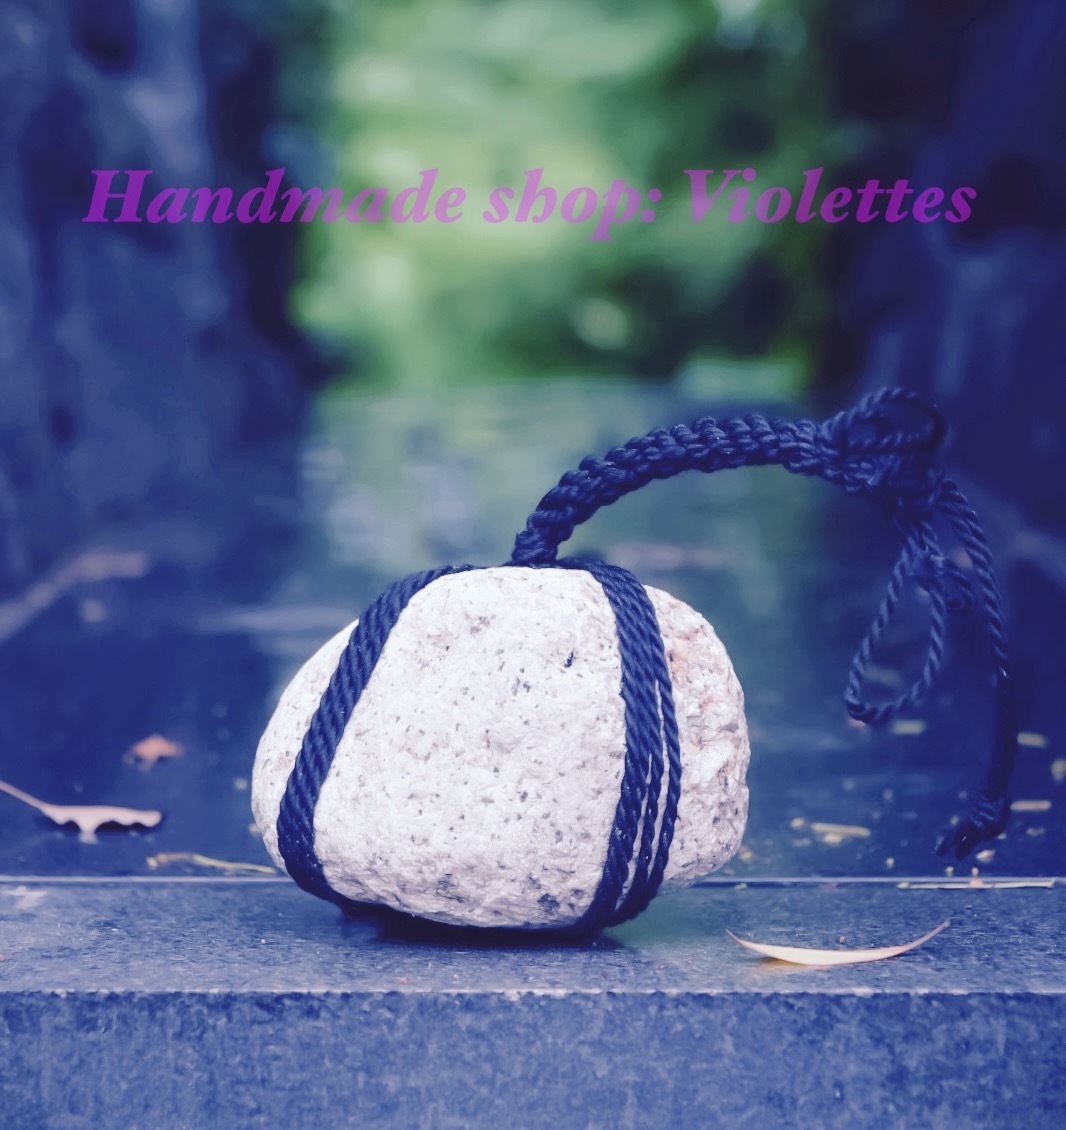 Handmade shop: Violettes